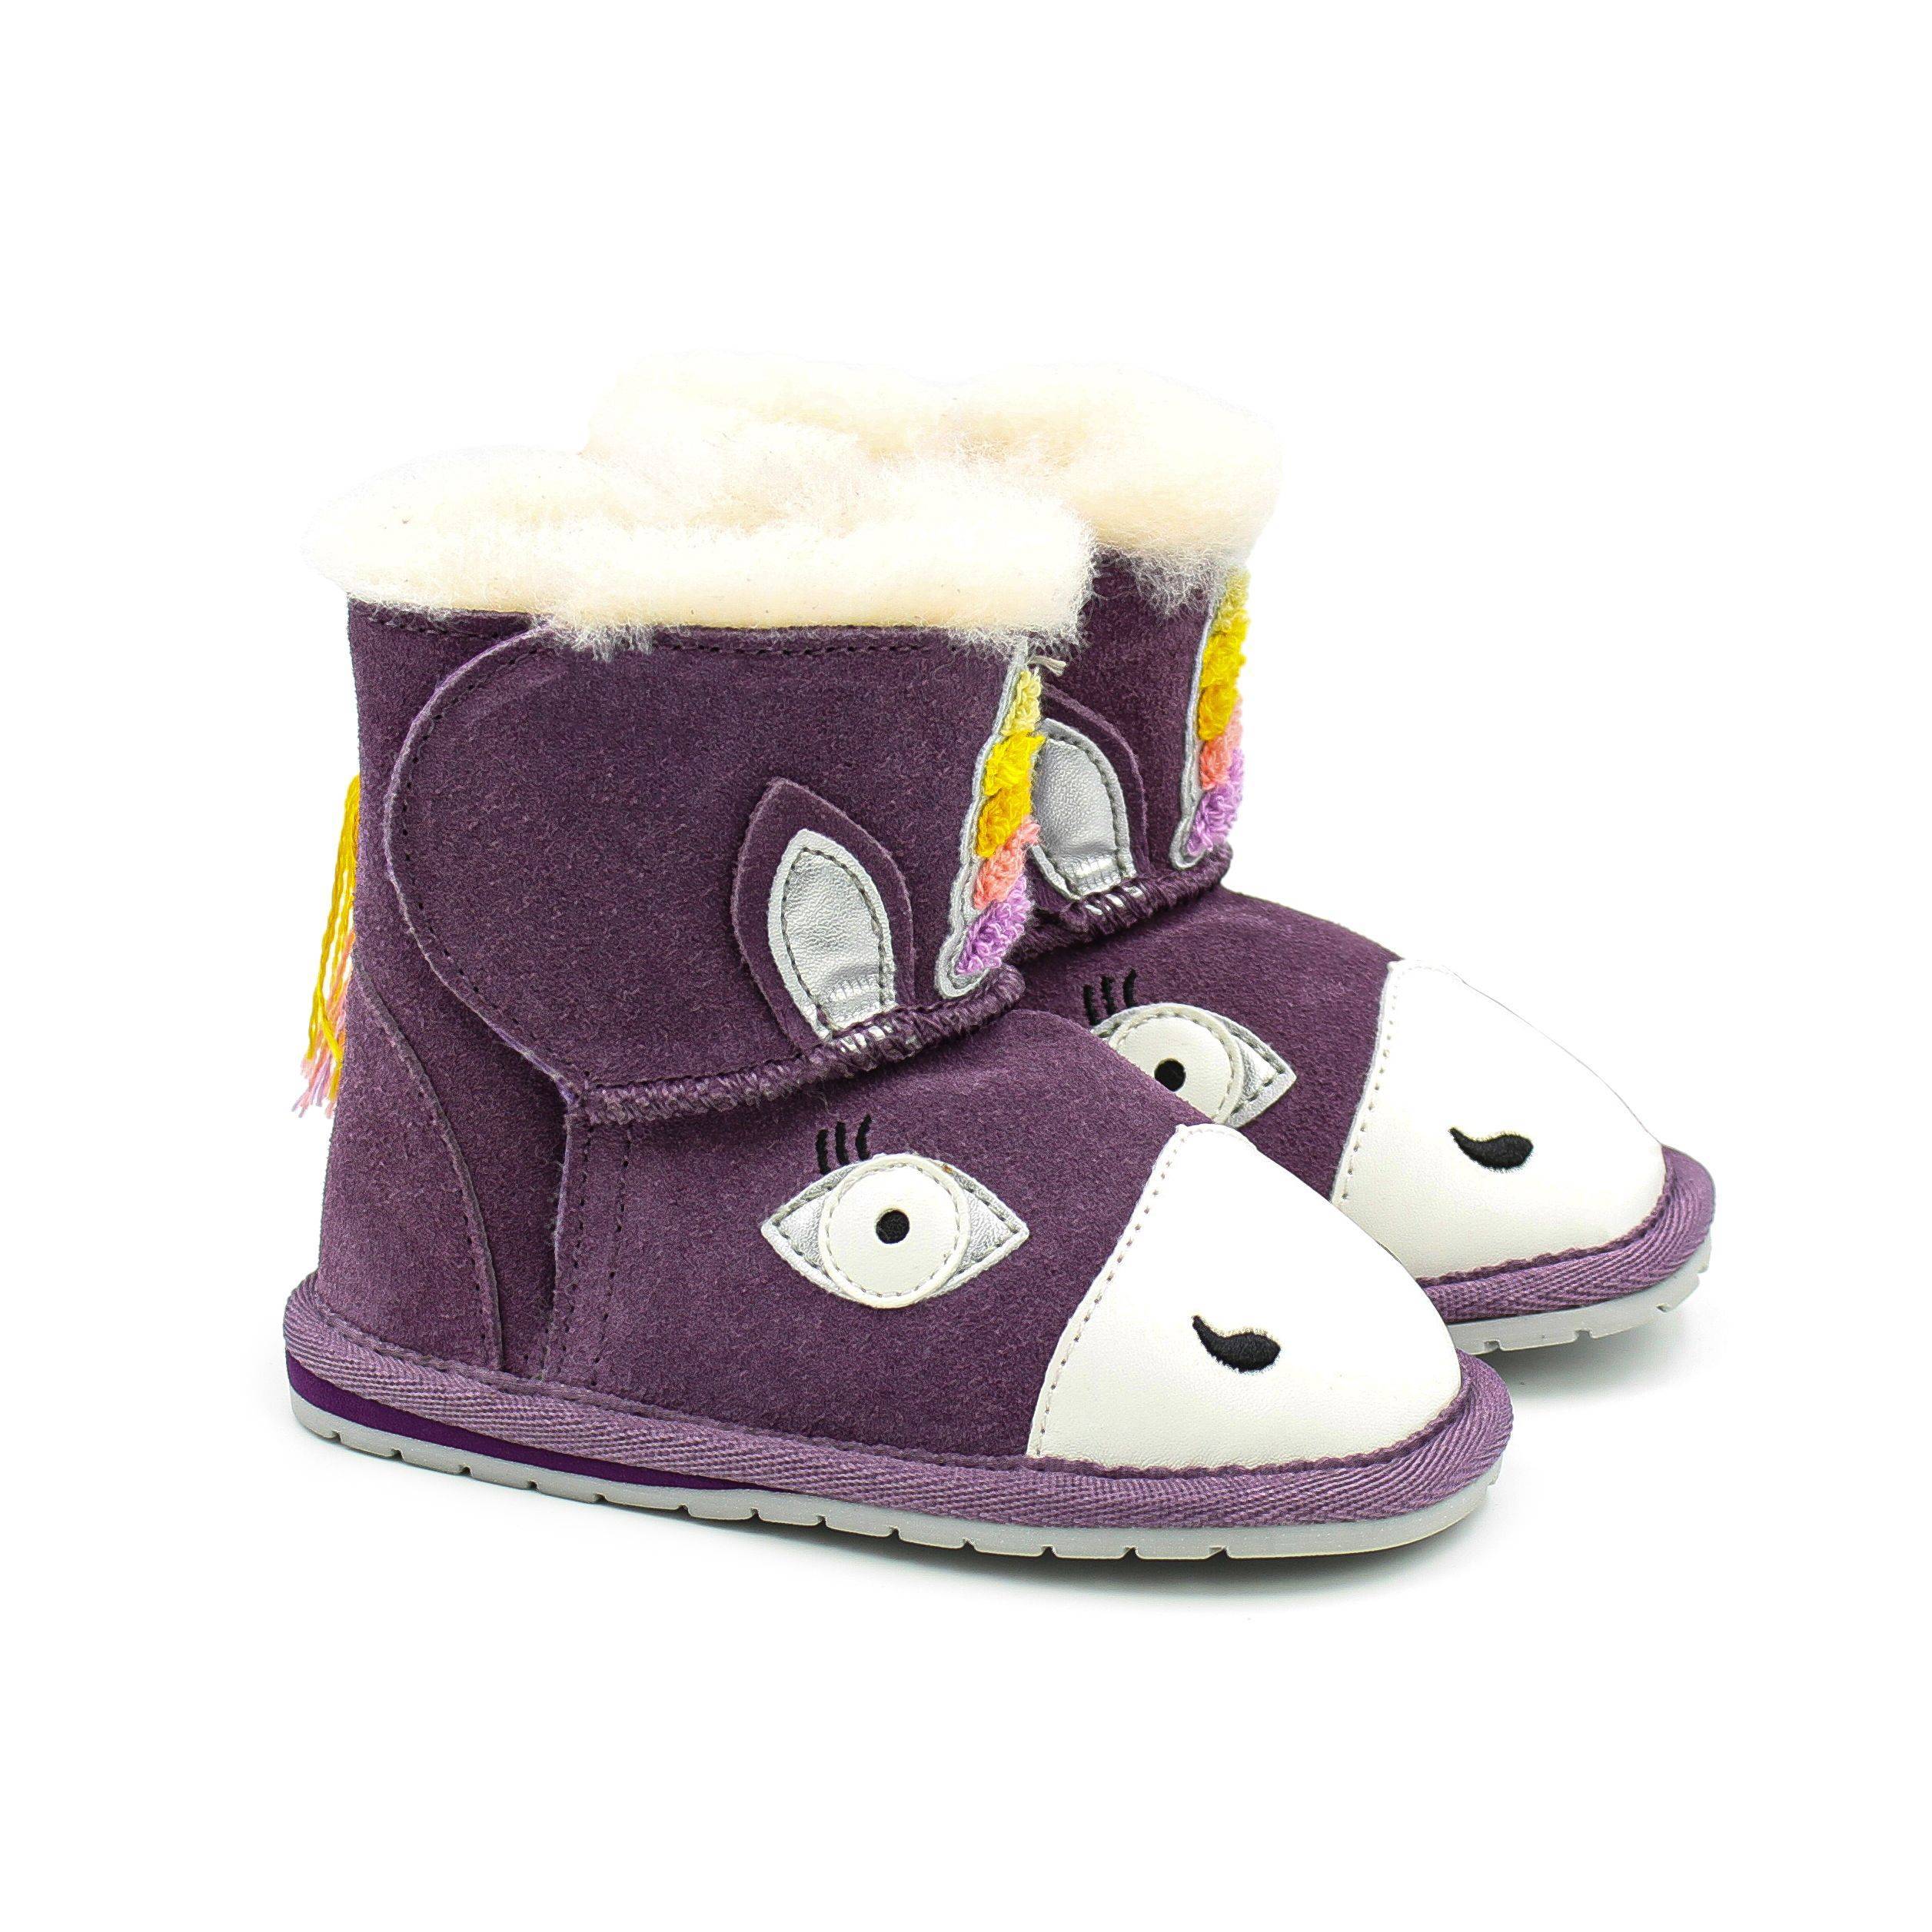 Детские ботинки из овчины (угги) EMU Australia(Magical Unicorn Walker B12409), фиолетовые, цвет фиолетовый, размер 21 - фото 9